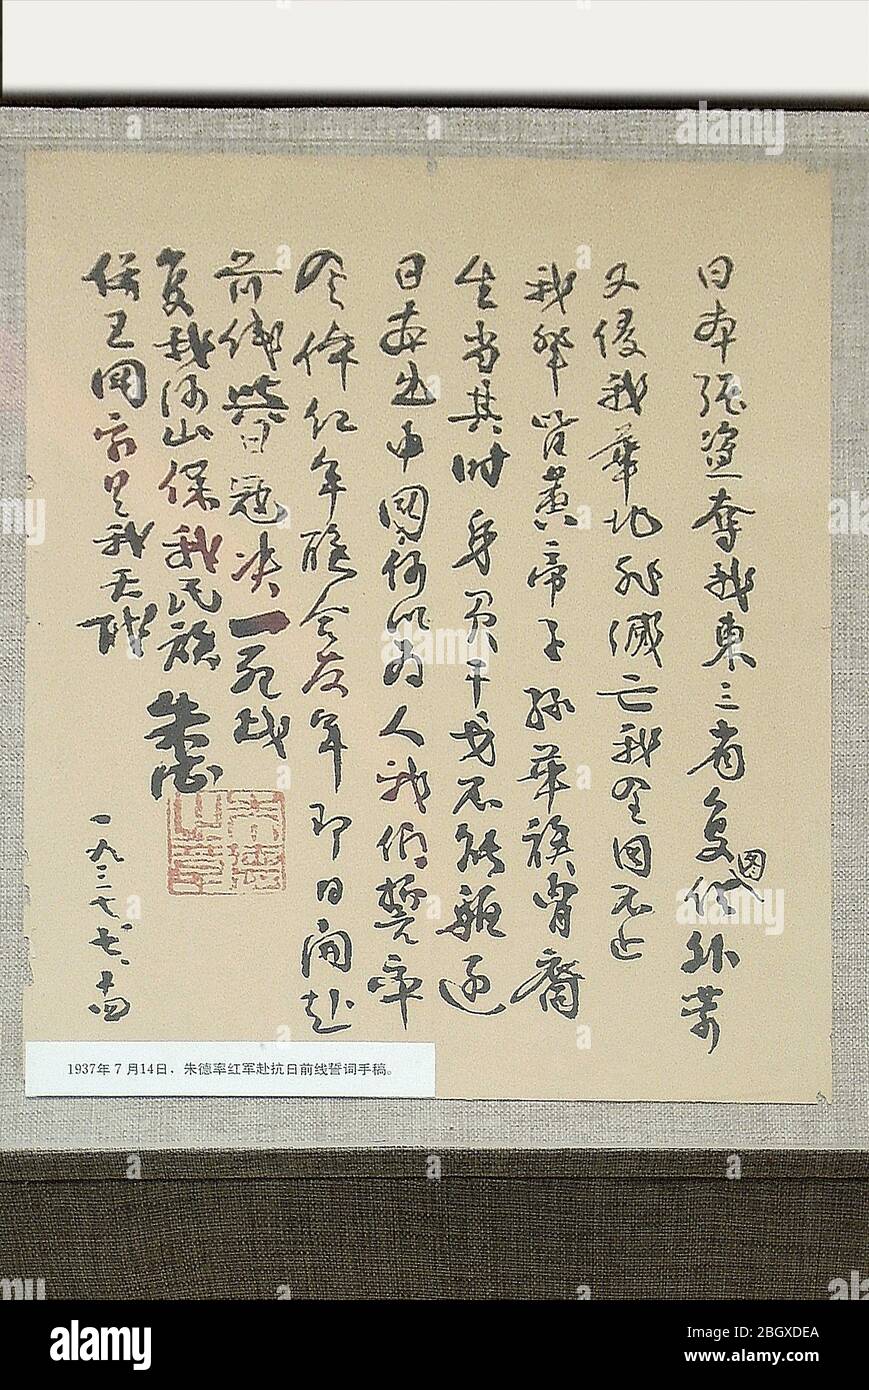 El 14 1937 de julio Zhu de condujo al Ejército Rojo al manuscrito del juramento ante el frente Antijaponés el octavo Ejército de Ruta Taihang Memorial Hall Wuxia Foto de stock